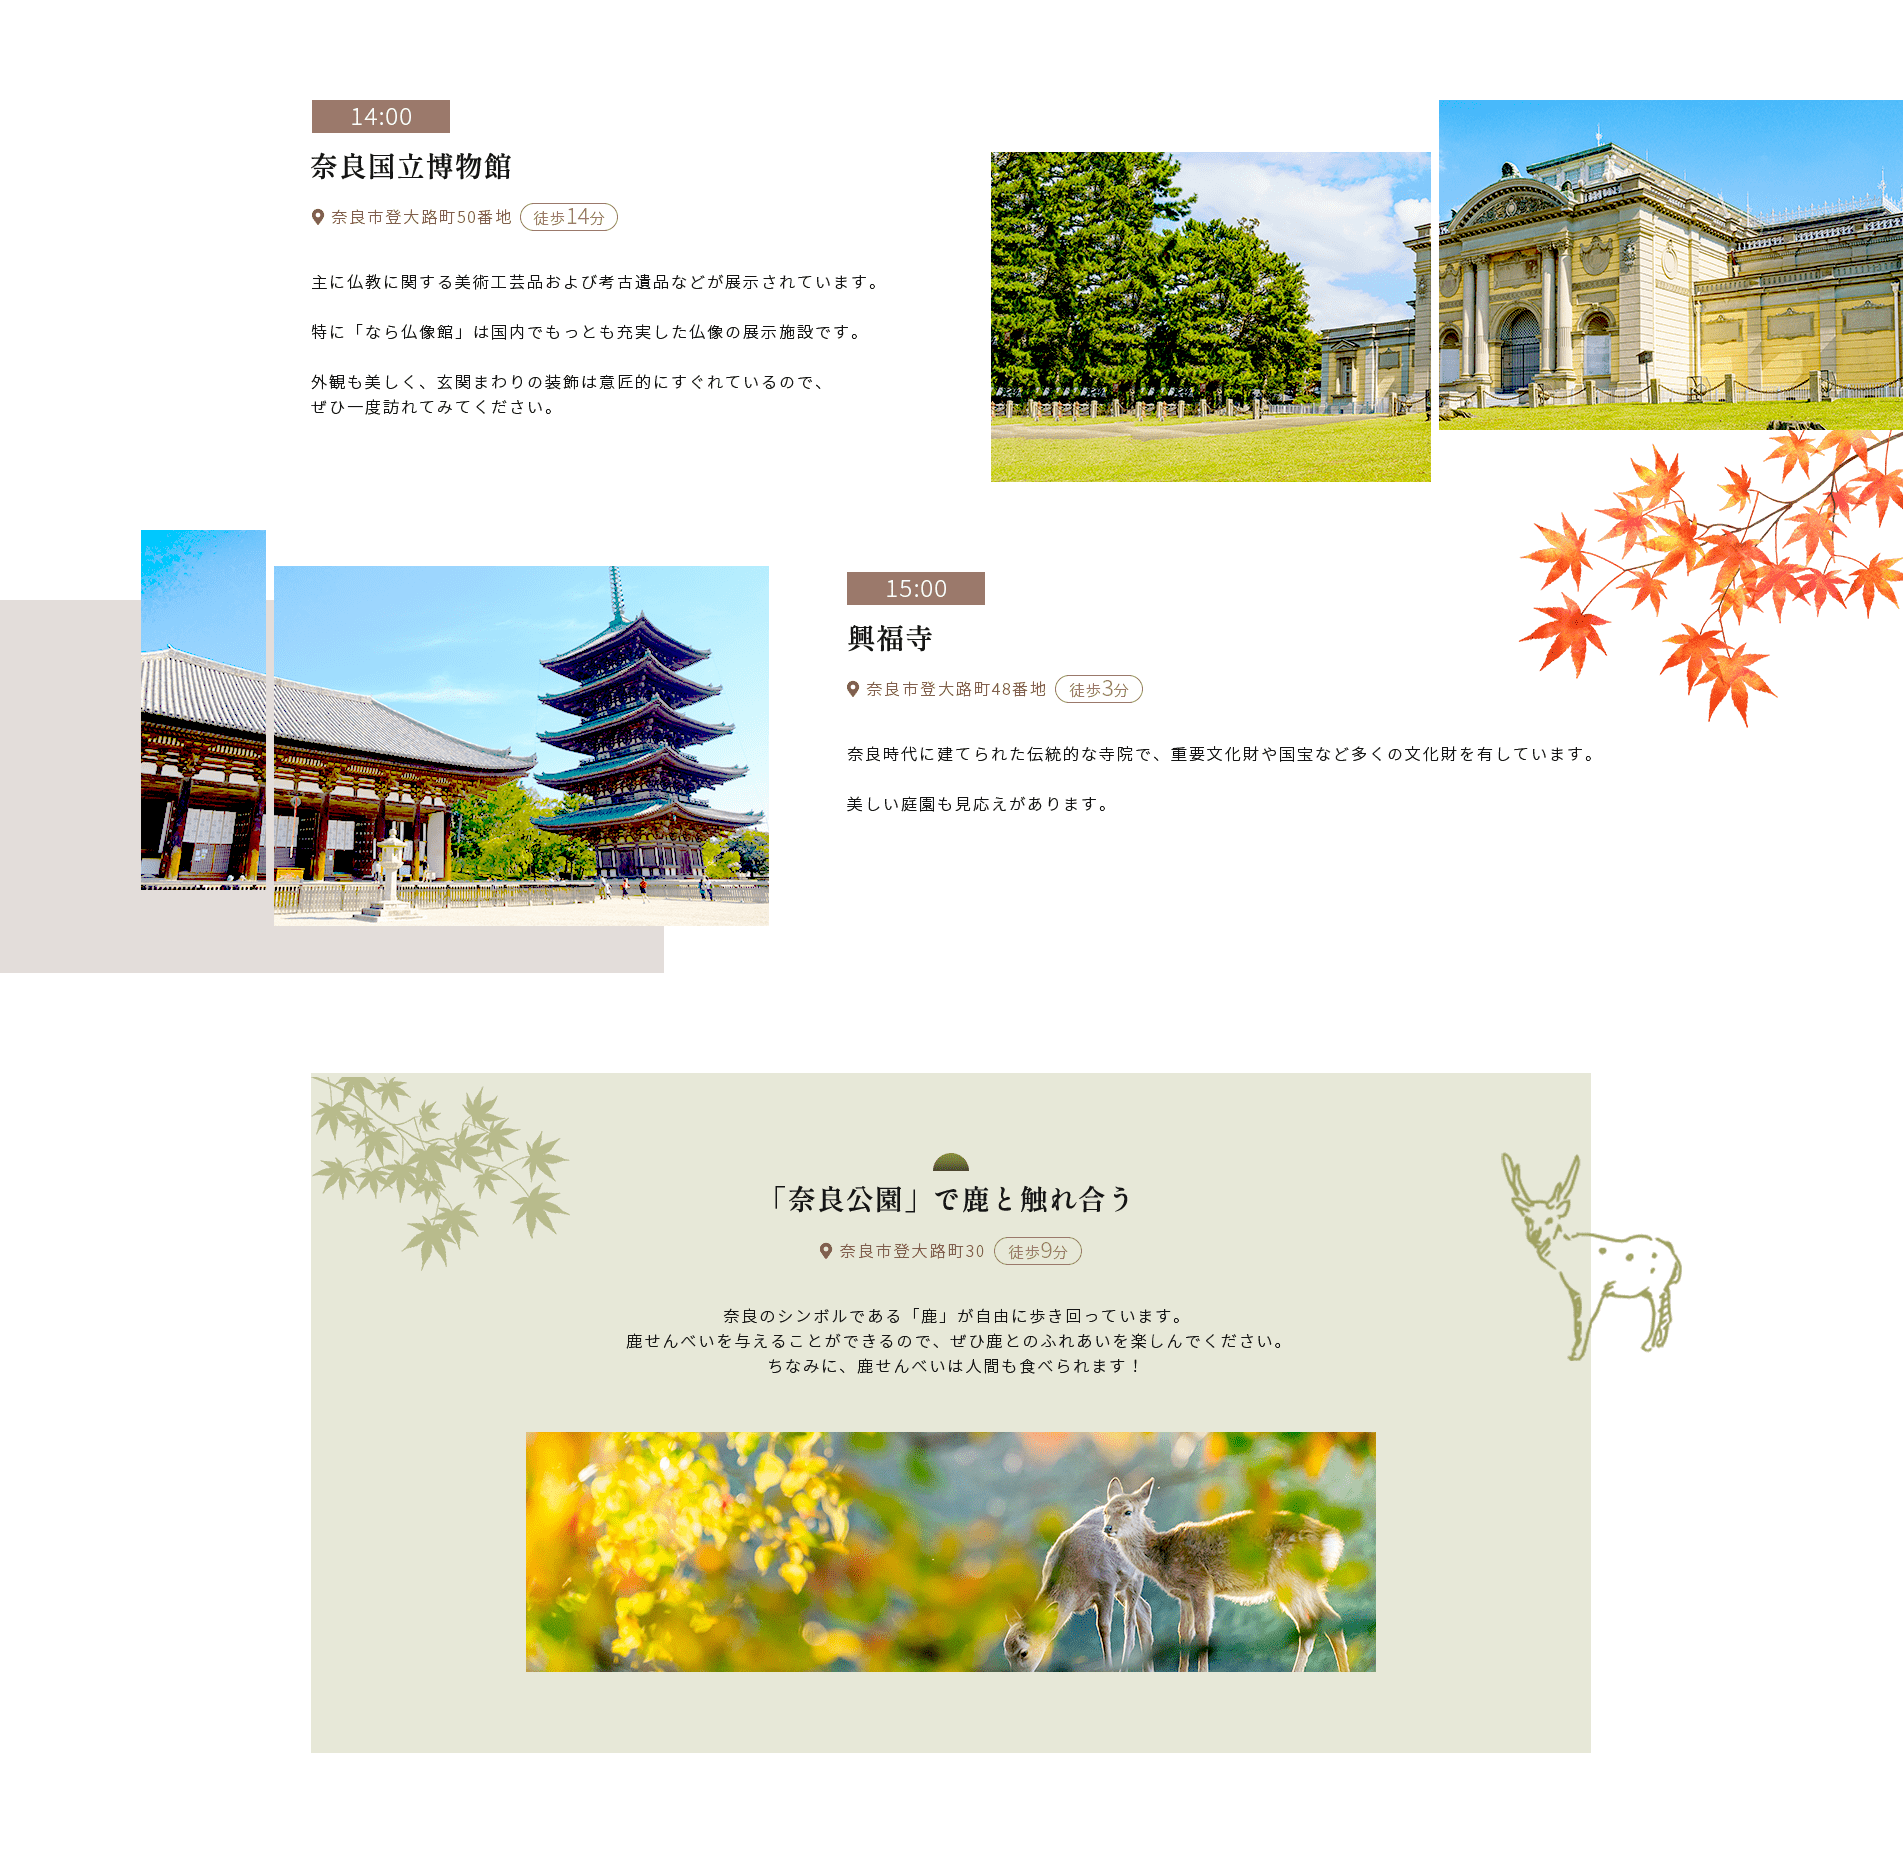 14:00奈良国立博物館●奈良市登大路町50番地 徒歩14分主に仏教に関する美術工芸品および考古遺品などが展示されています。特に「なら仏像館」 は国内でもっとも充実した仏像の展示施設です。外観も美しく、 玄関まわりの装飾は意匠的にすぐれているので、 ぜひ一度訪れてみてください。15:00興福寺●奈良市登大路町48番地徒歩3分奈良時代に建てられた伝統的な寺院で、 重要文化財や国宝など多くの文化財を有しています。美しい庭園も見応えがあります。「奈良公園」で鹿と触れ合う● 奈良市登大路町30 徒歩9分奈良のシンボルである 「鹿」 が自由に歩き回っています。 鹿せんべいを与えることができるので、ぜひ鹿とのふれあいを楽しんでください。 ちなみに、 鹿せんべいは人間も食べられます!